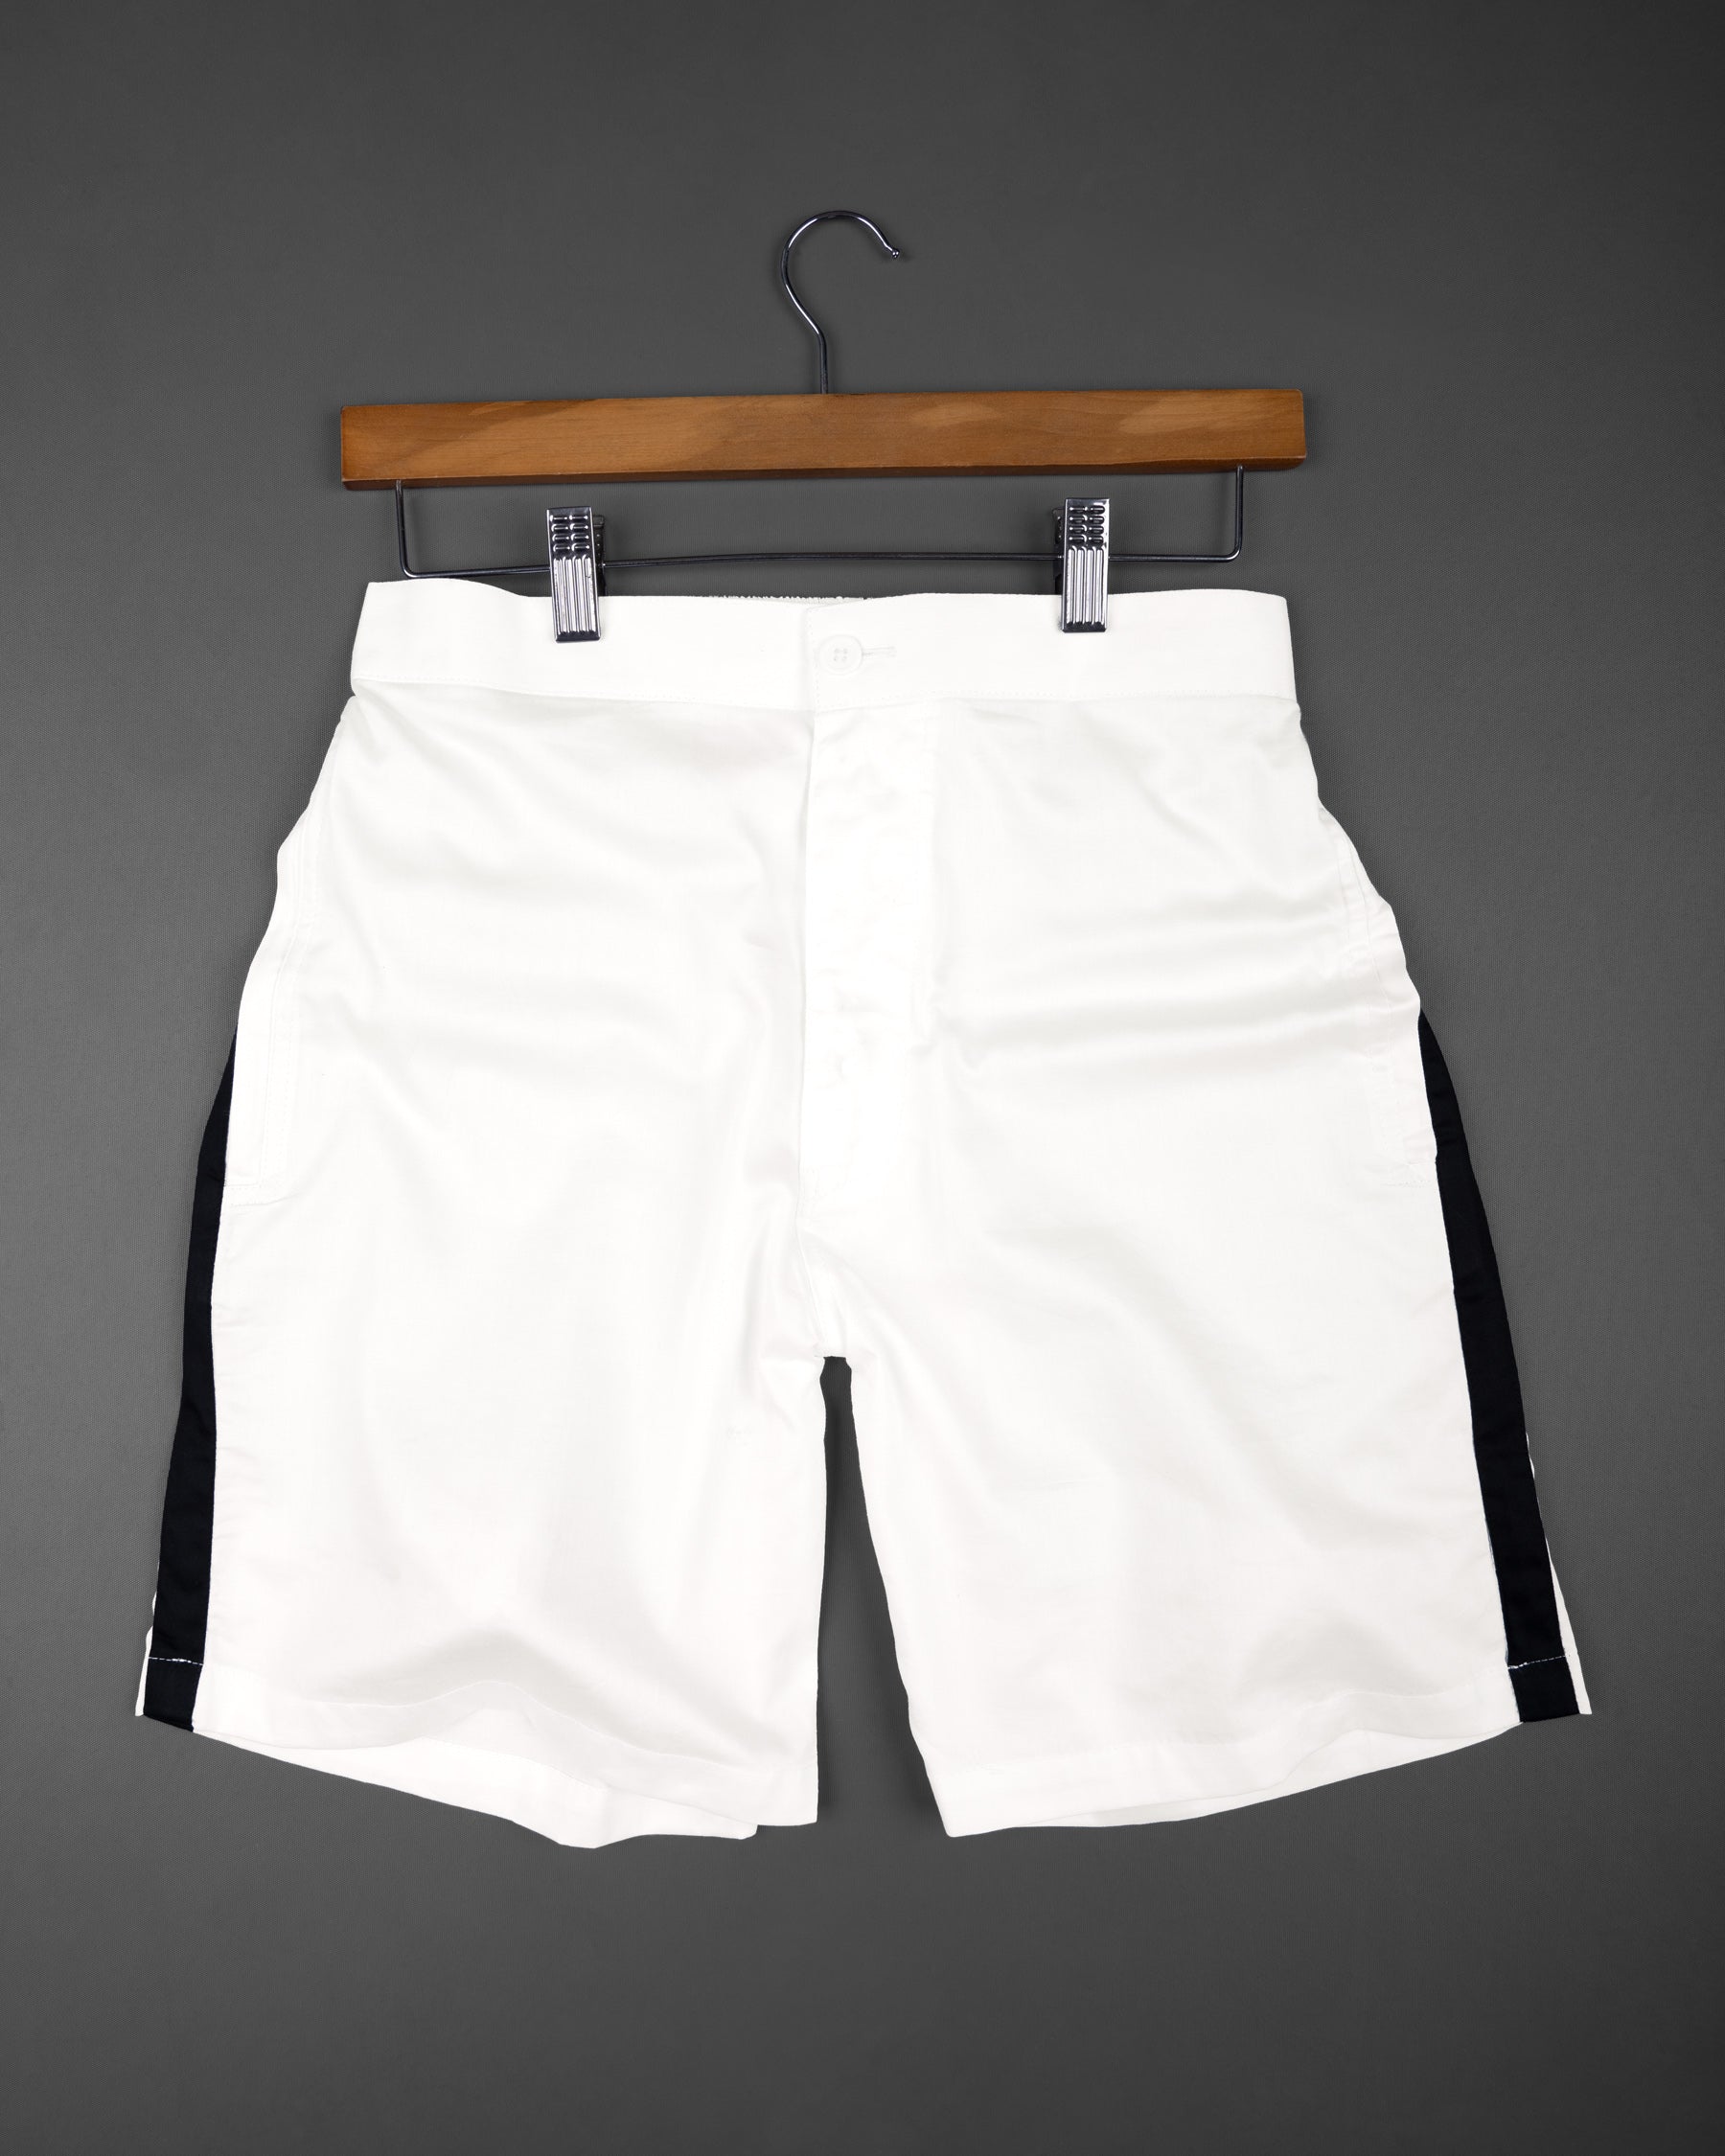 Bright White with Black Striped Super Soft Premium Cotton Designer Shorts SR144-28, SR144-30, SR144-32, SR144-34, SR144-36, SR144-38, SR144-40, SR144-42, SR144-44